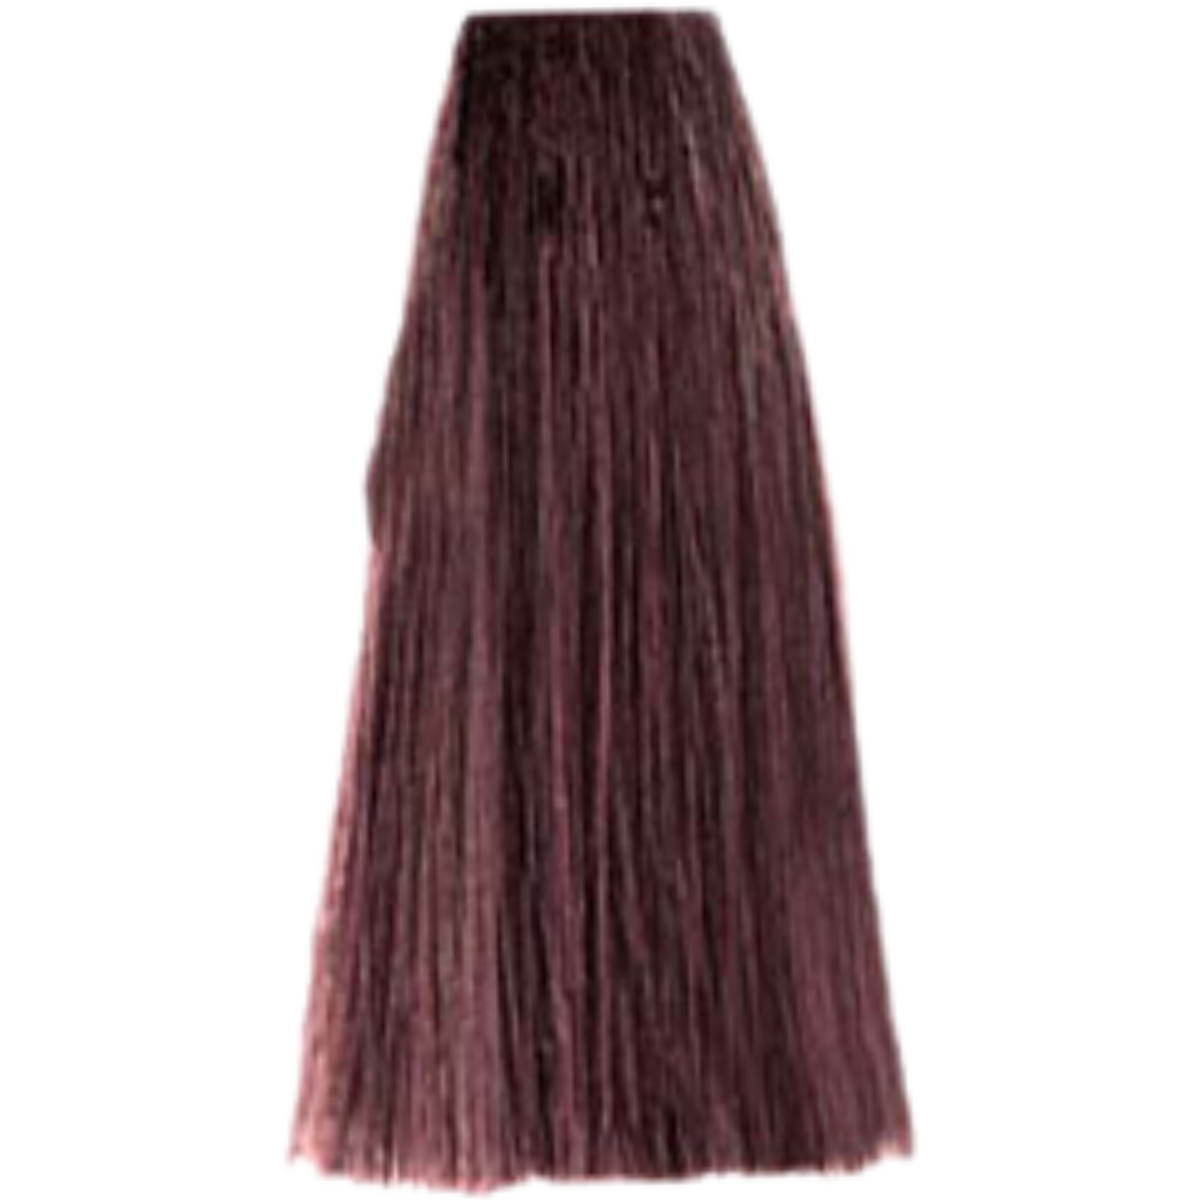 צבע שיער 5.52 LIGHT CHOCOLATE MAHOGANY BROWN פארמויטה FarmaVita צבע לשיער 100 גרם